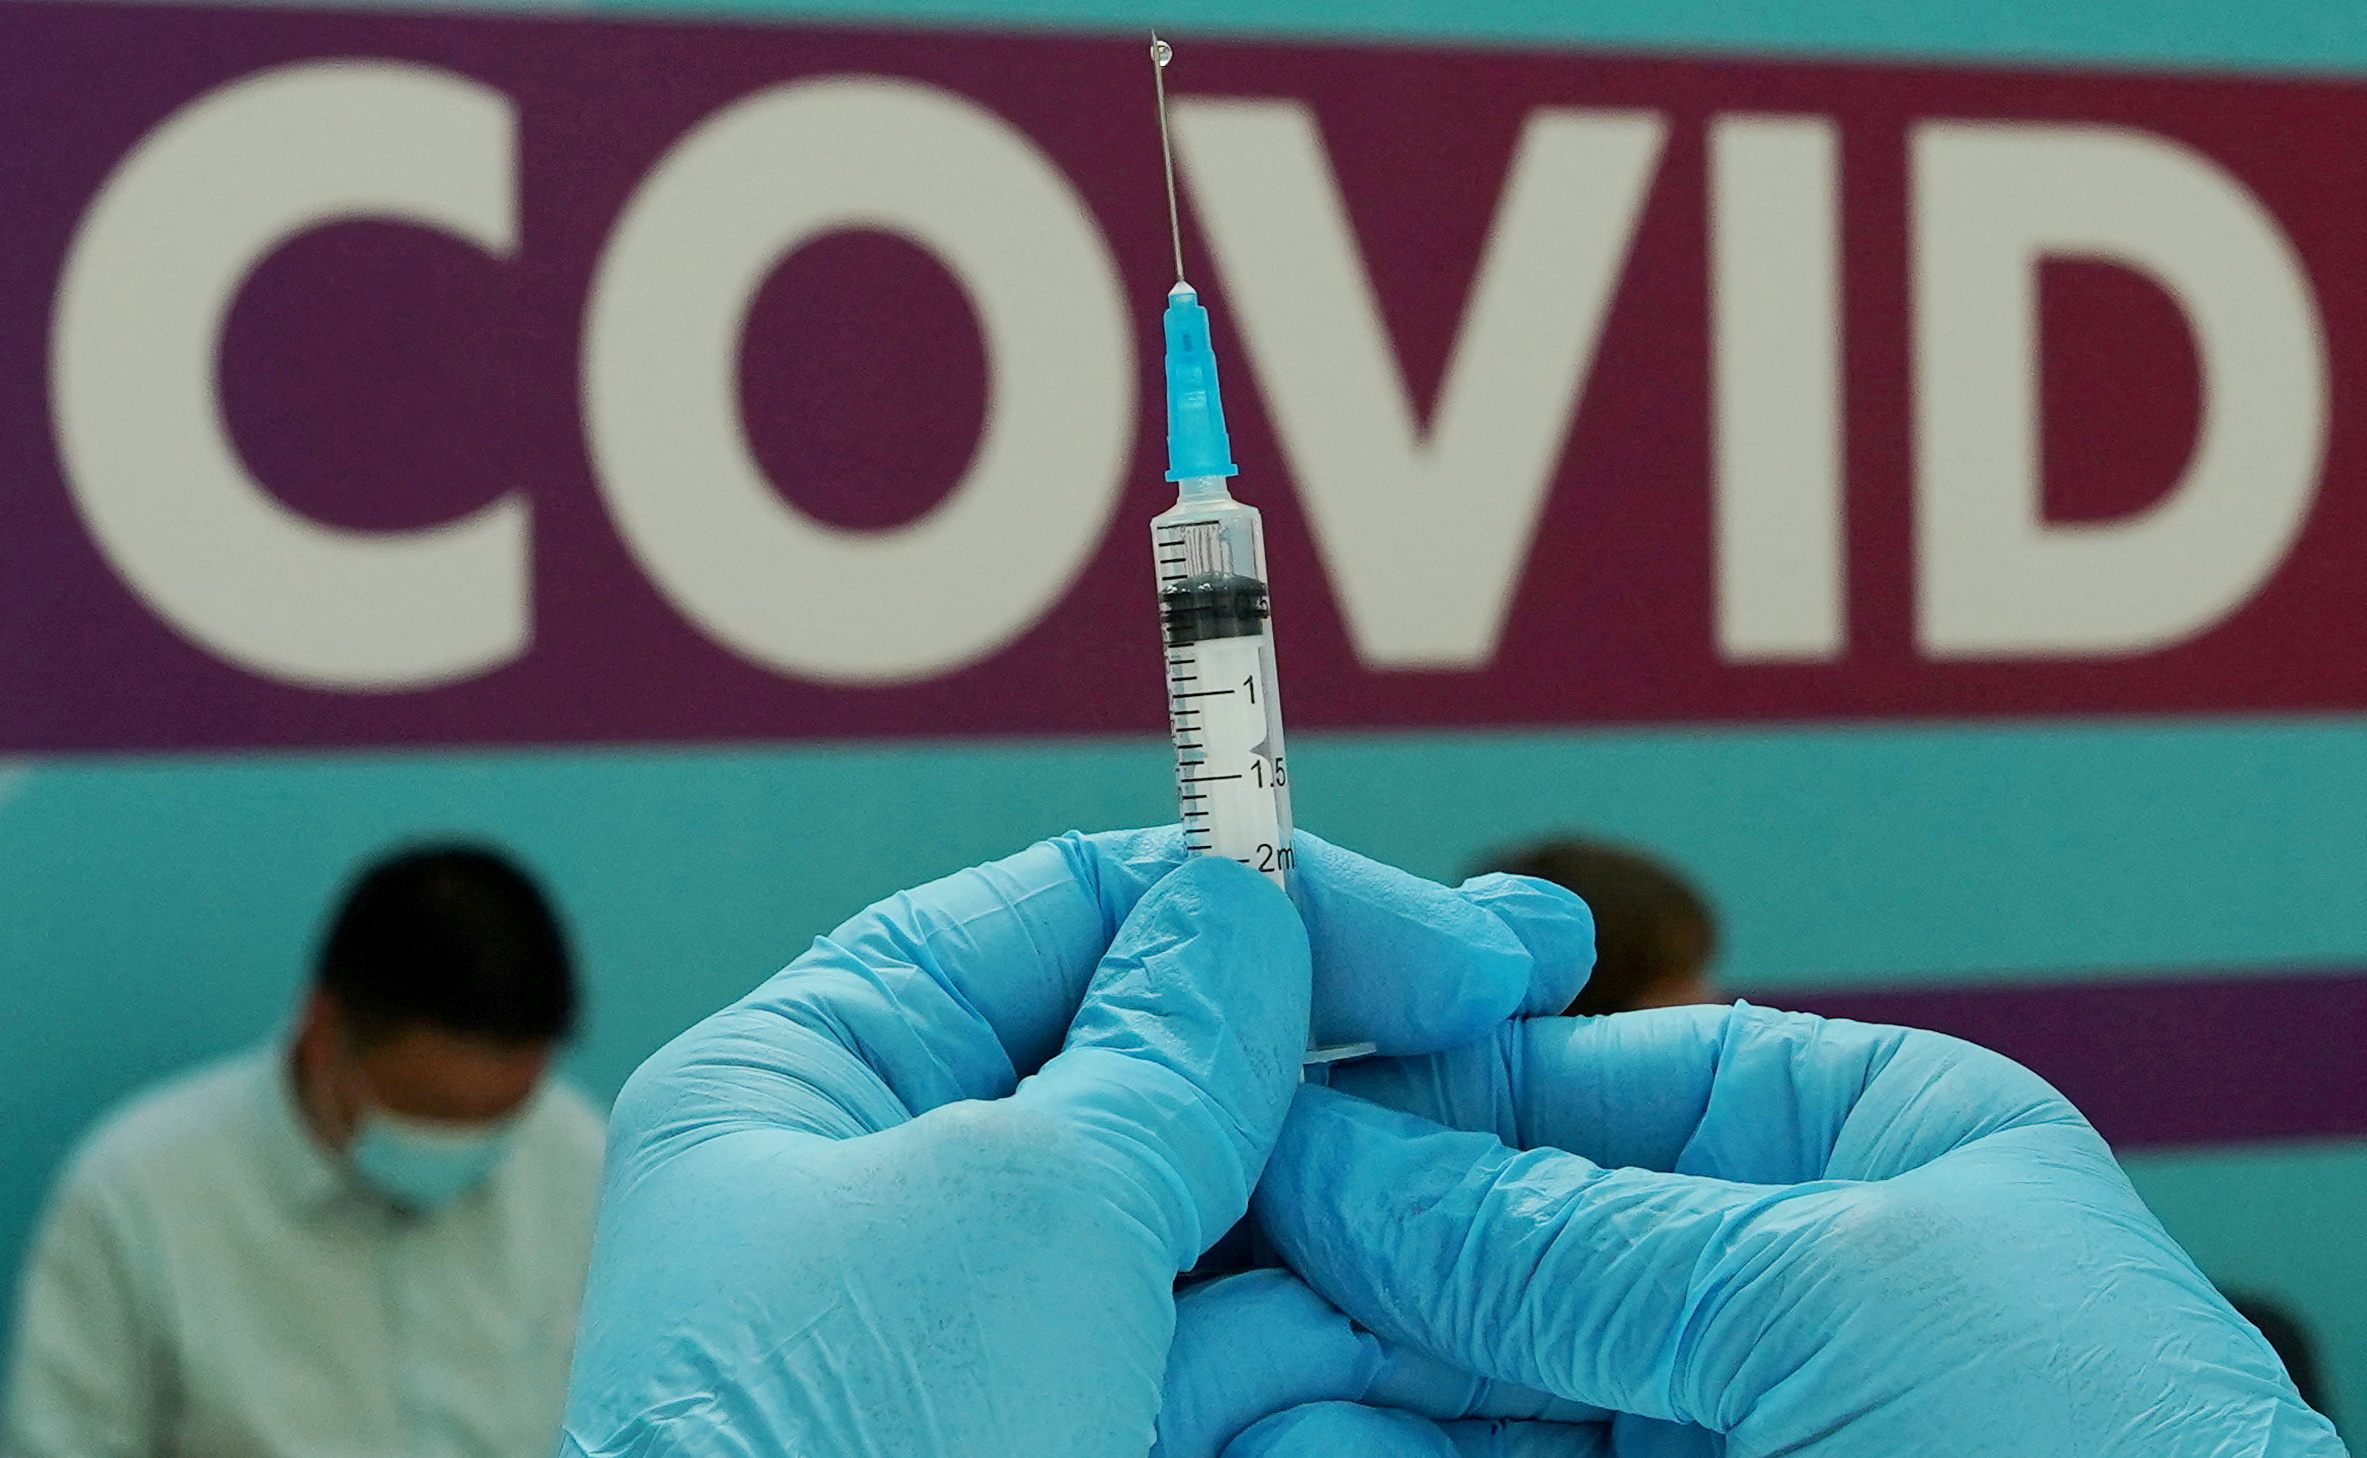 La tecnología detrás de las nuevas vacunas se podría aplicar a otras enfermedades (REUTERS/Tatyana Makeyeva/File Photo)